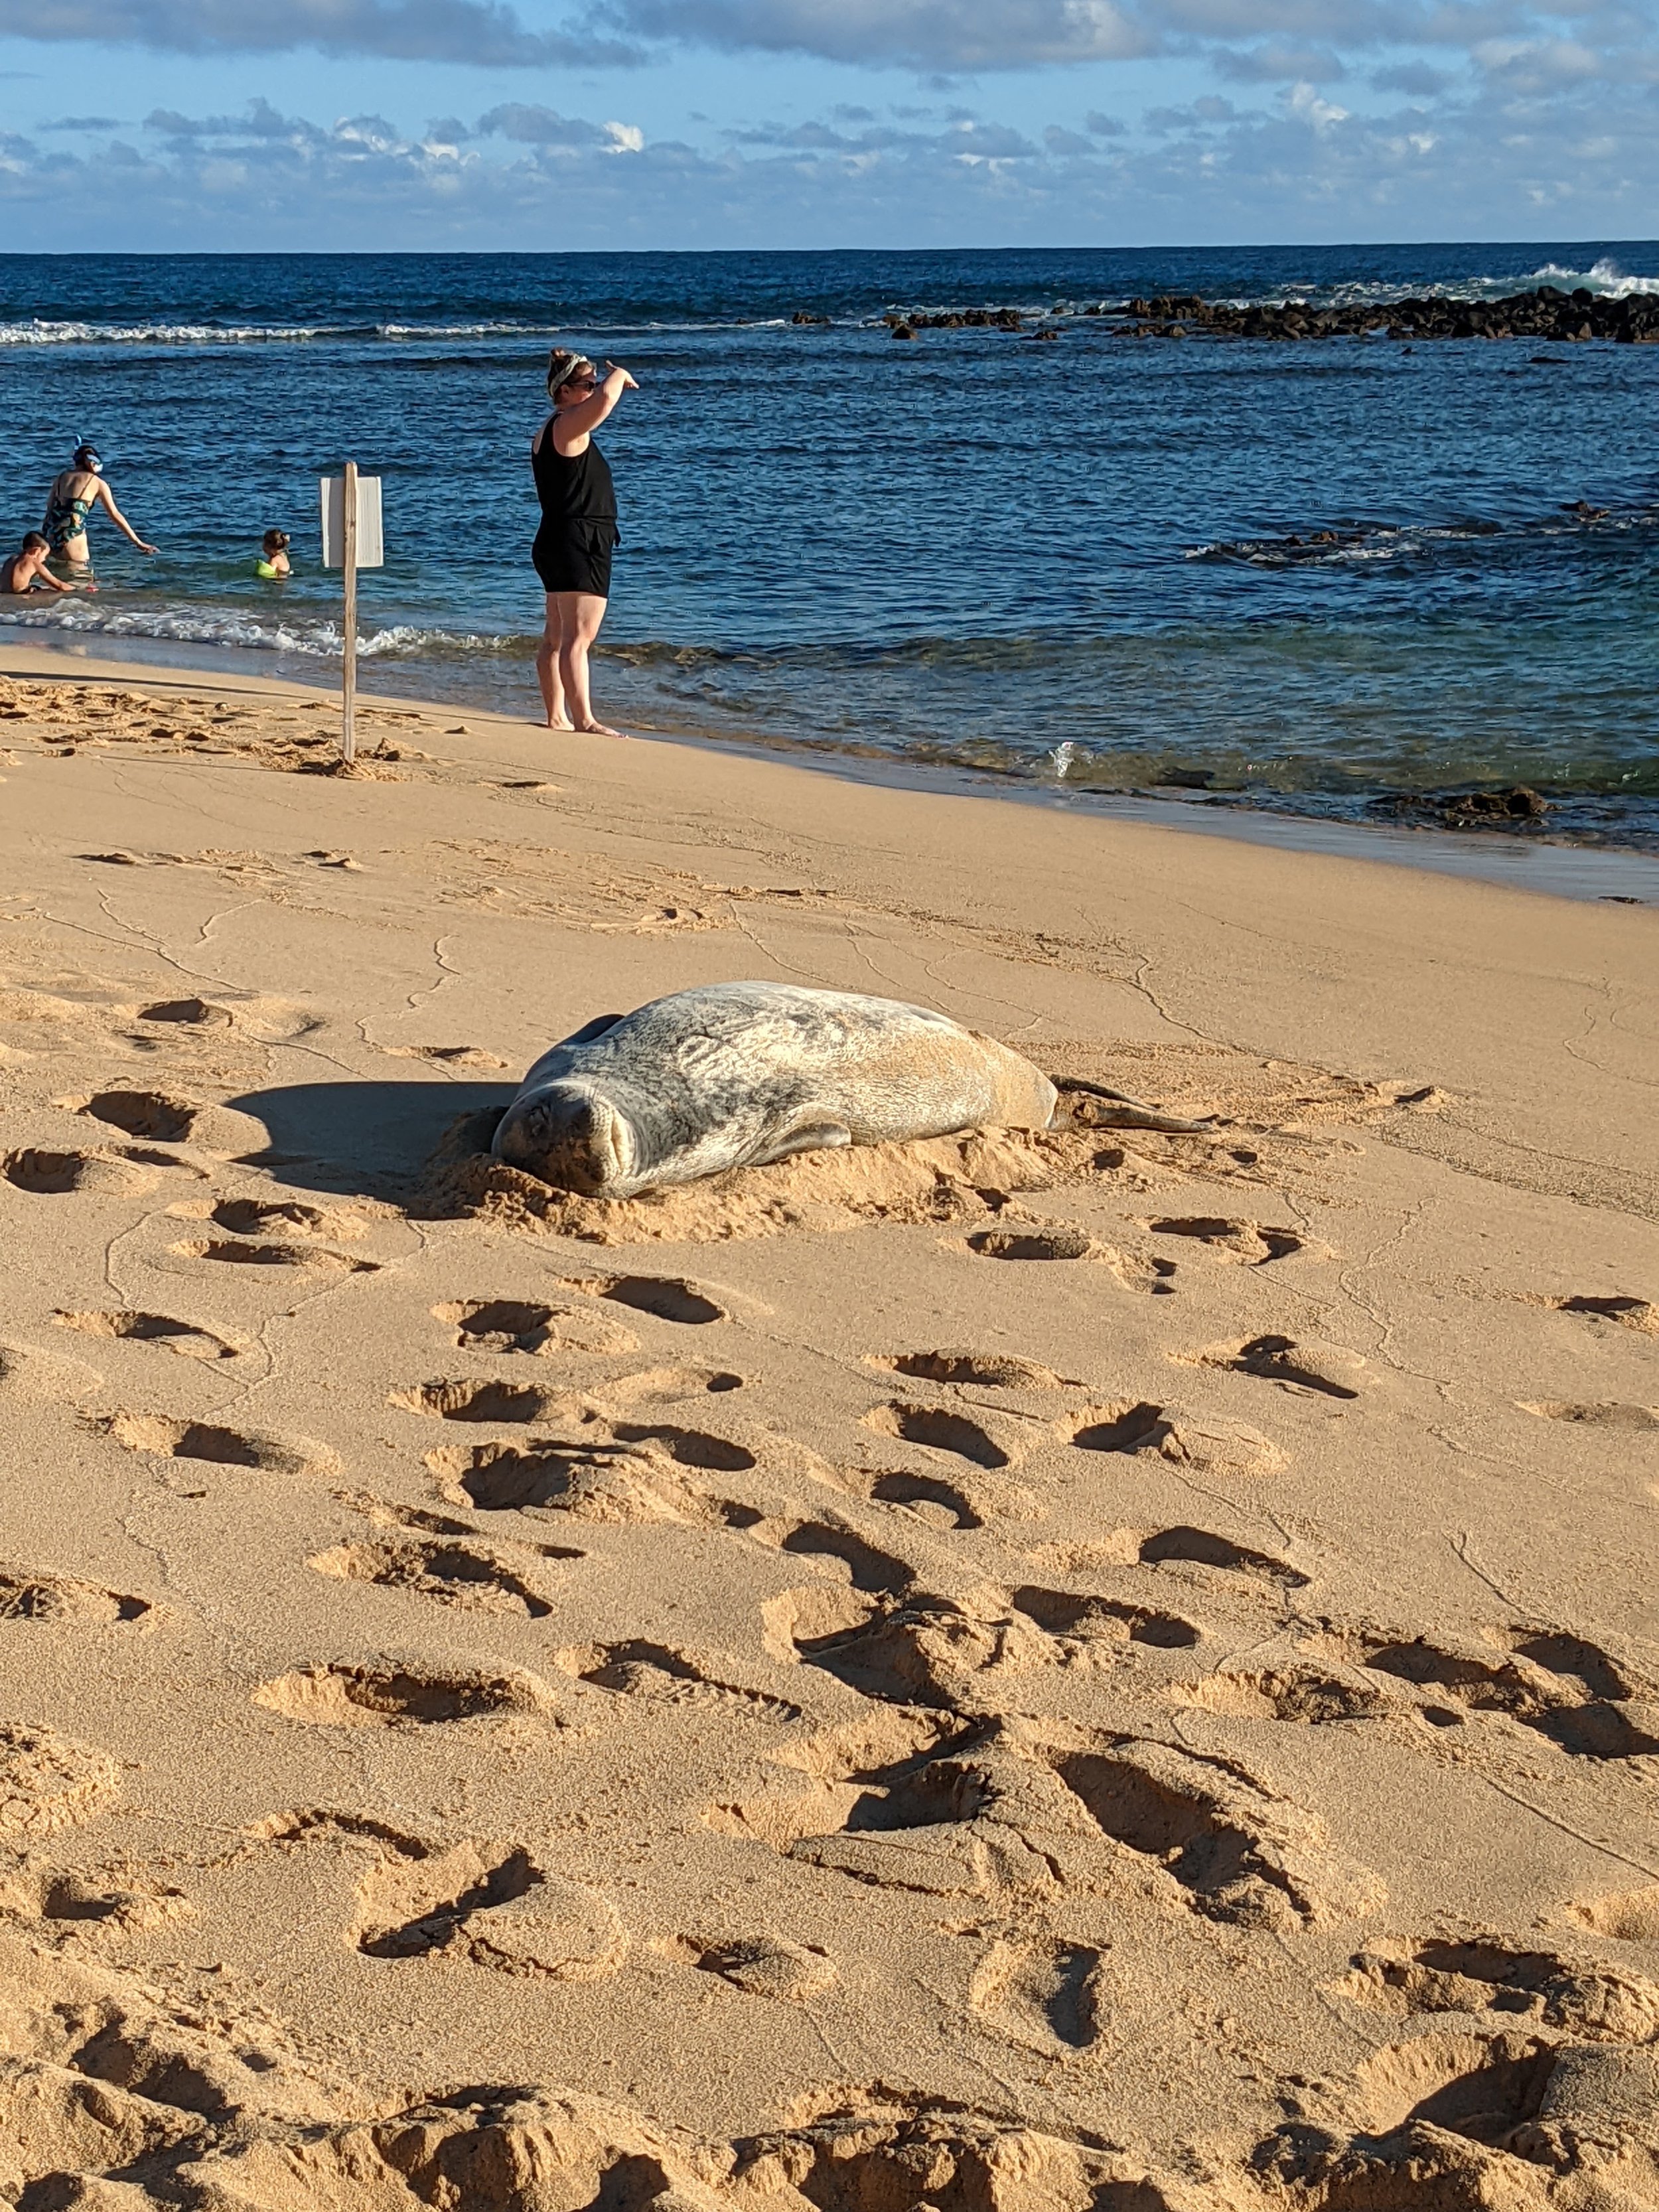 Hawaii Monk Seal